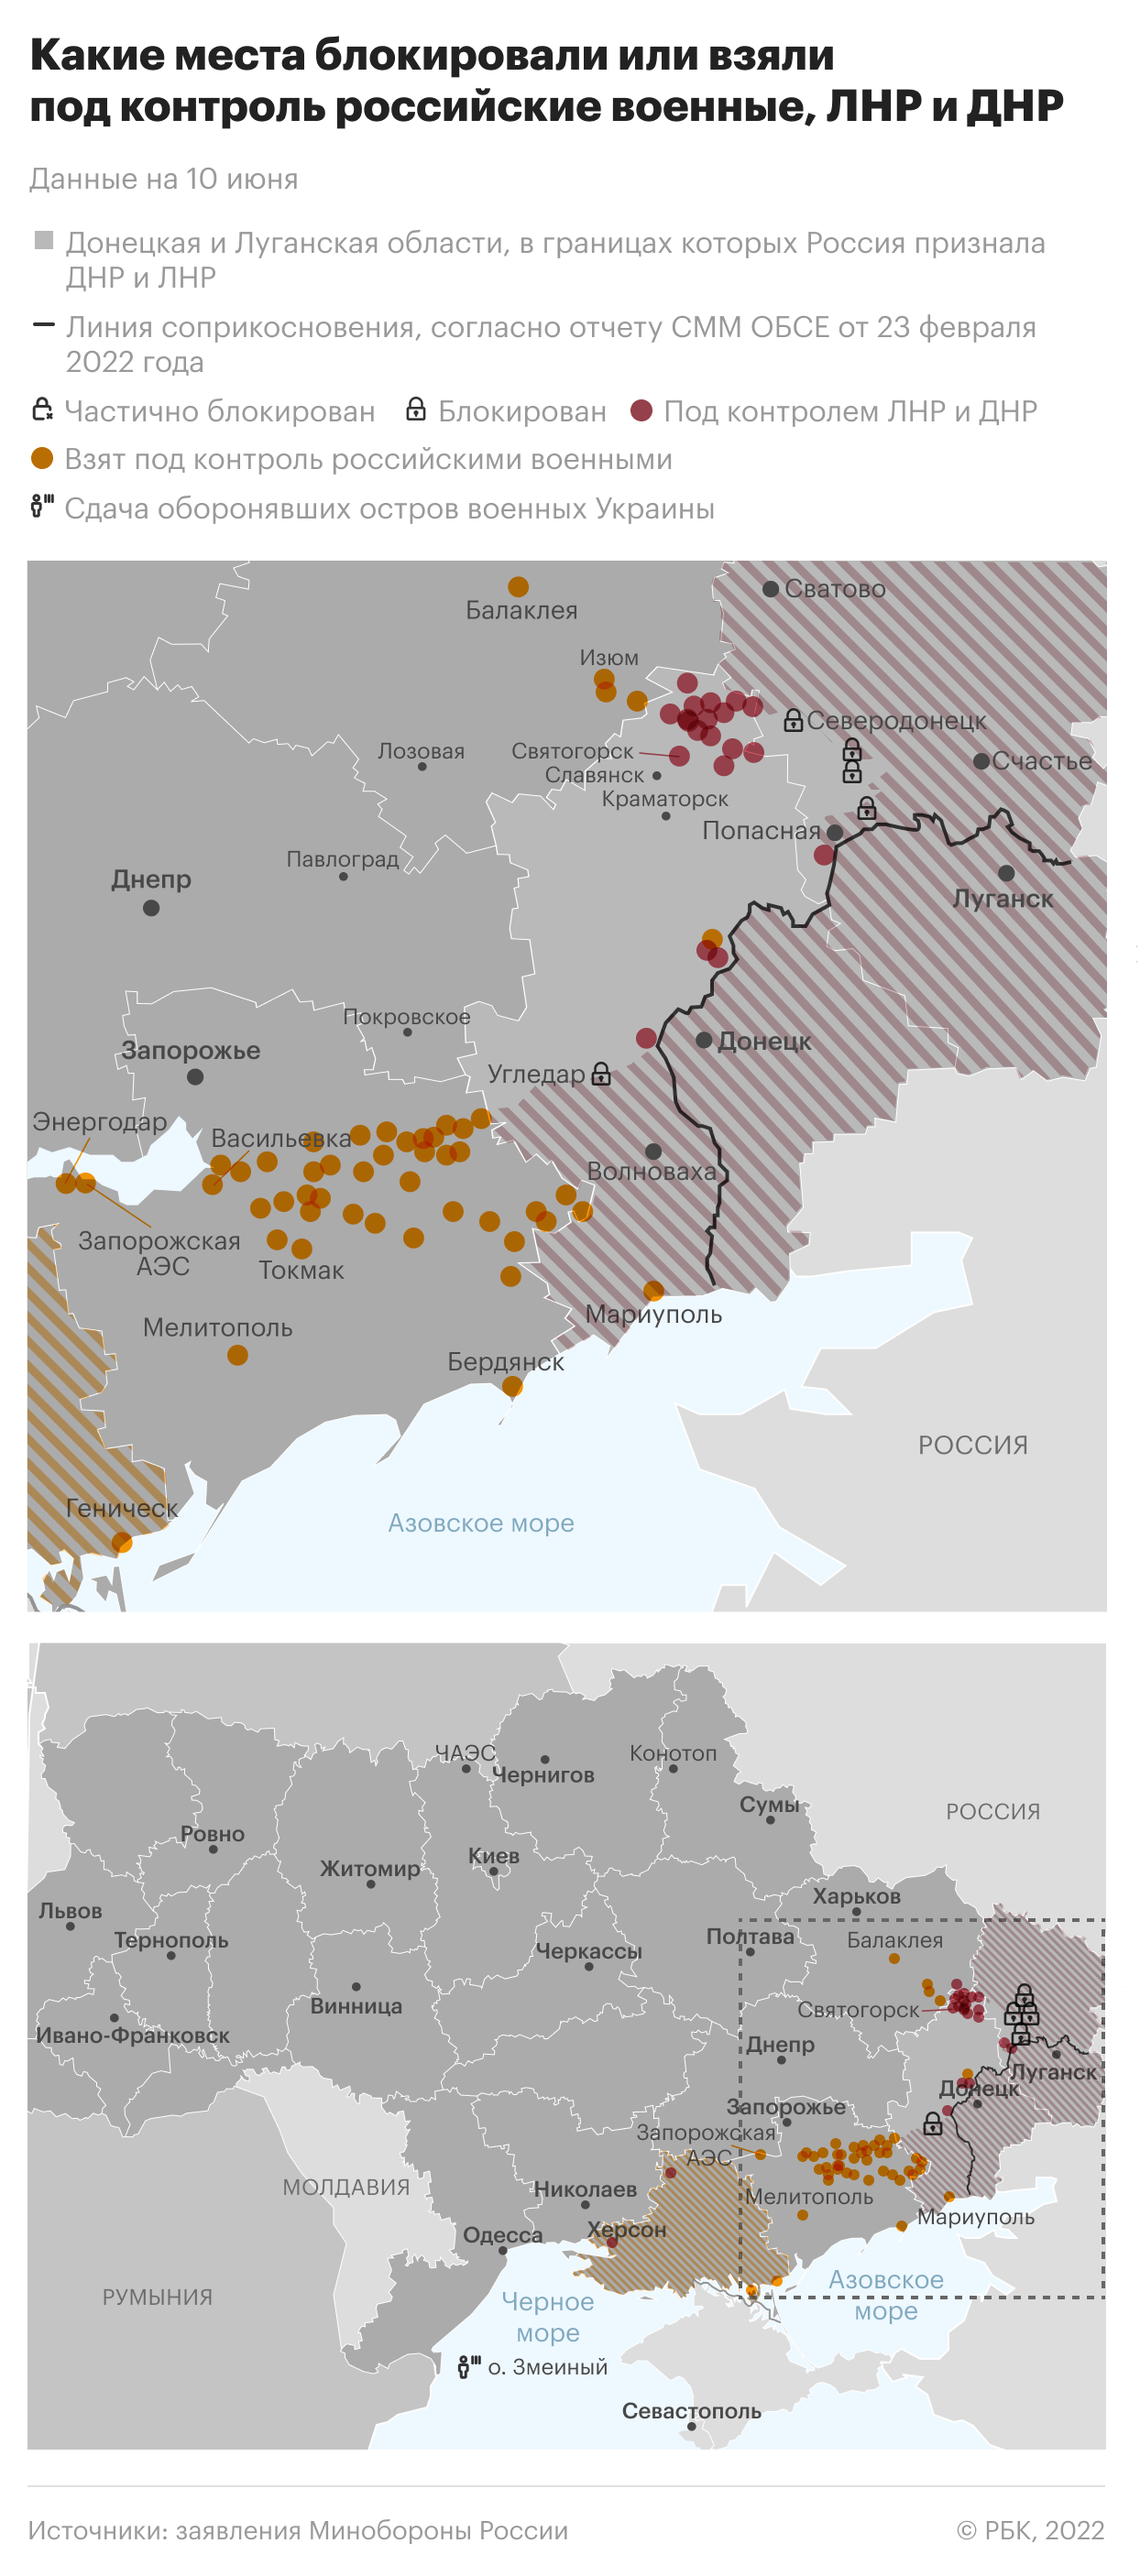 В 15 регионах сообщили о погибших в ходе военной операции на Украине"/>













